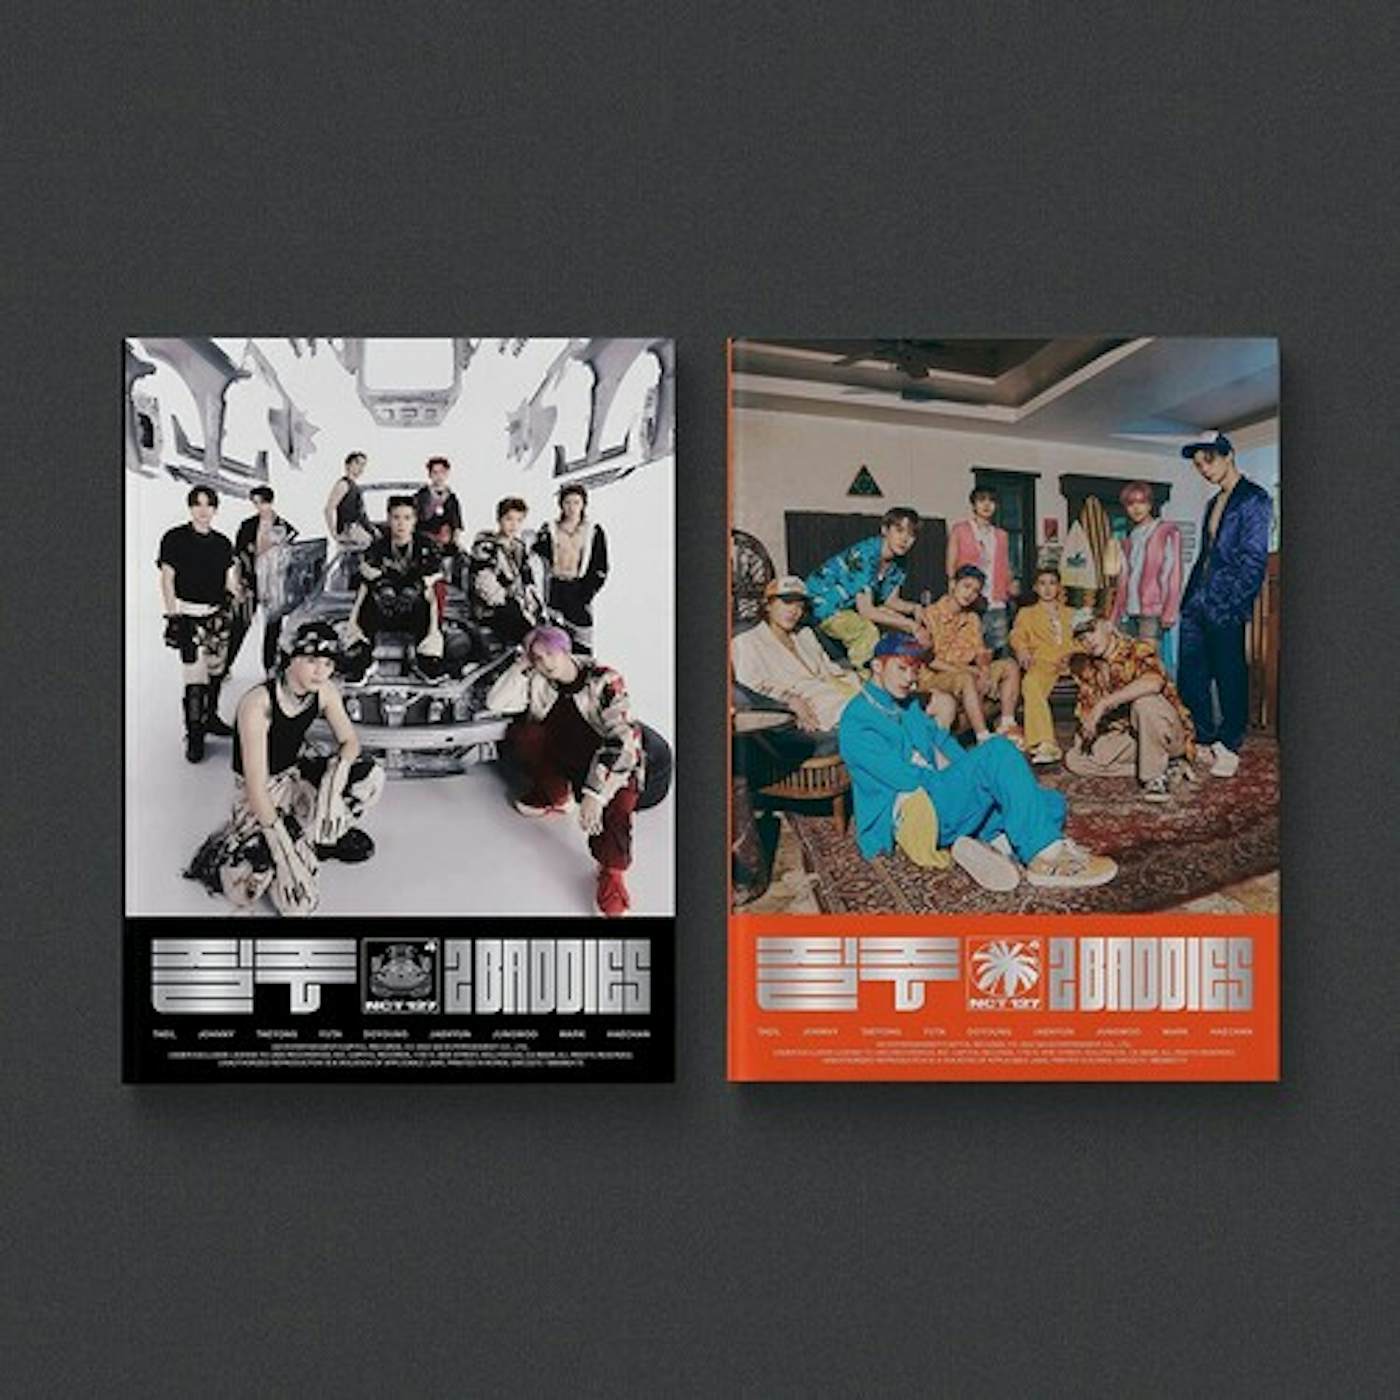 NCT 127 4TH ALBUM '2 BADDIES' (PHOTOBOOK VER.) CD